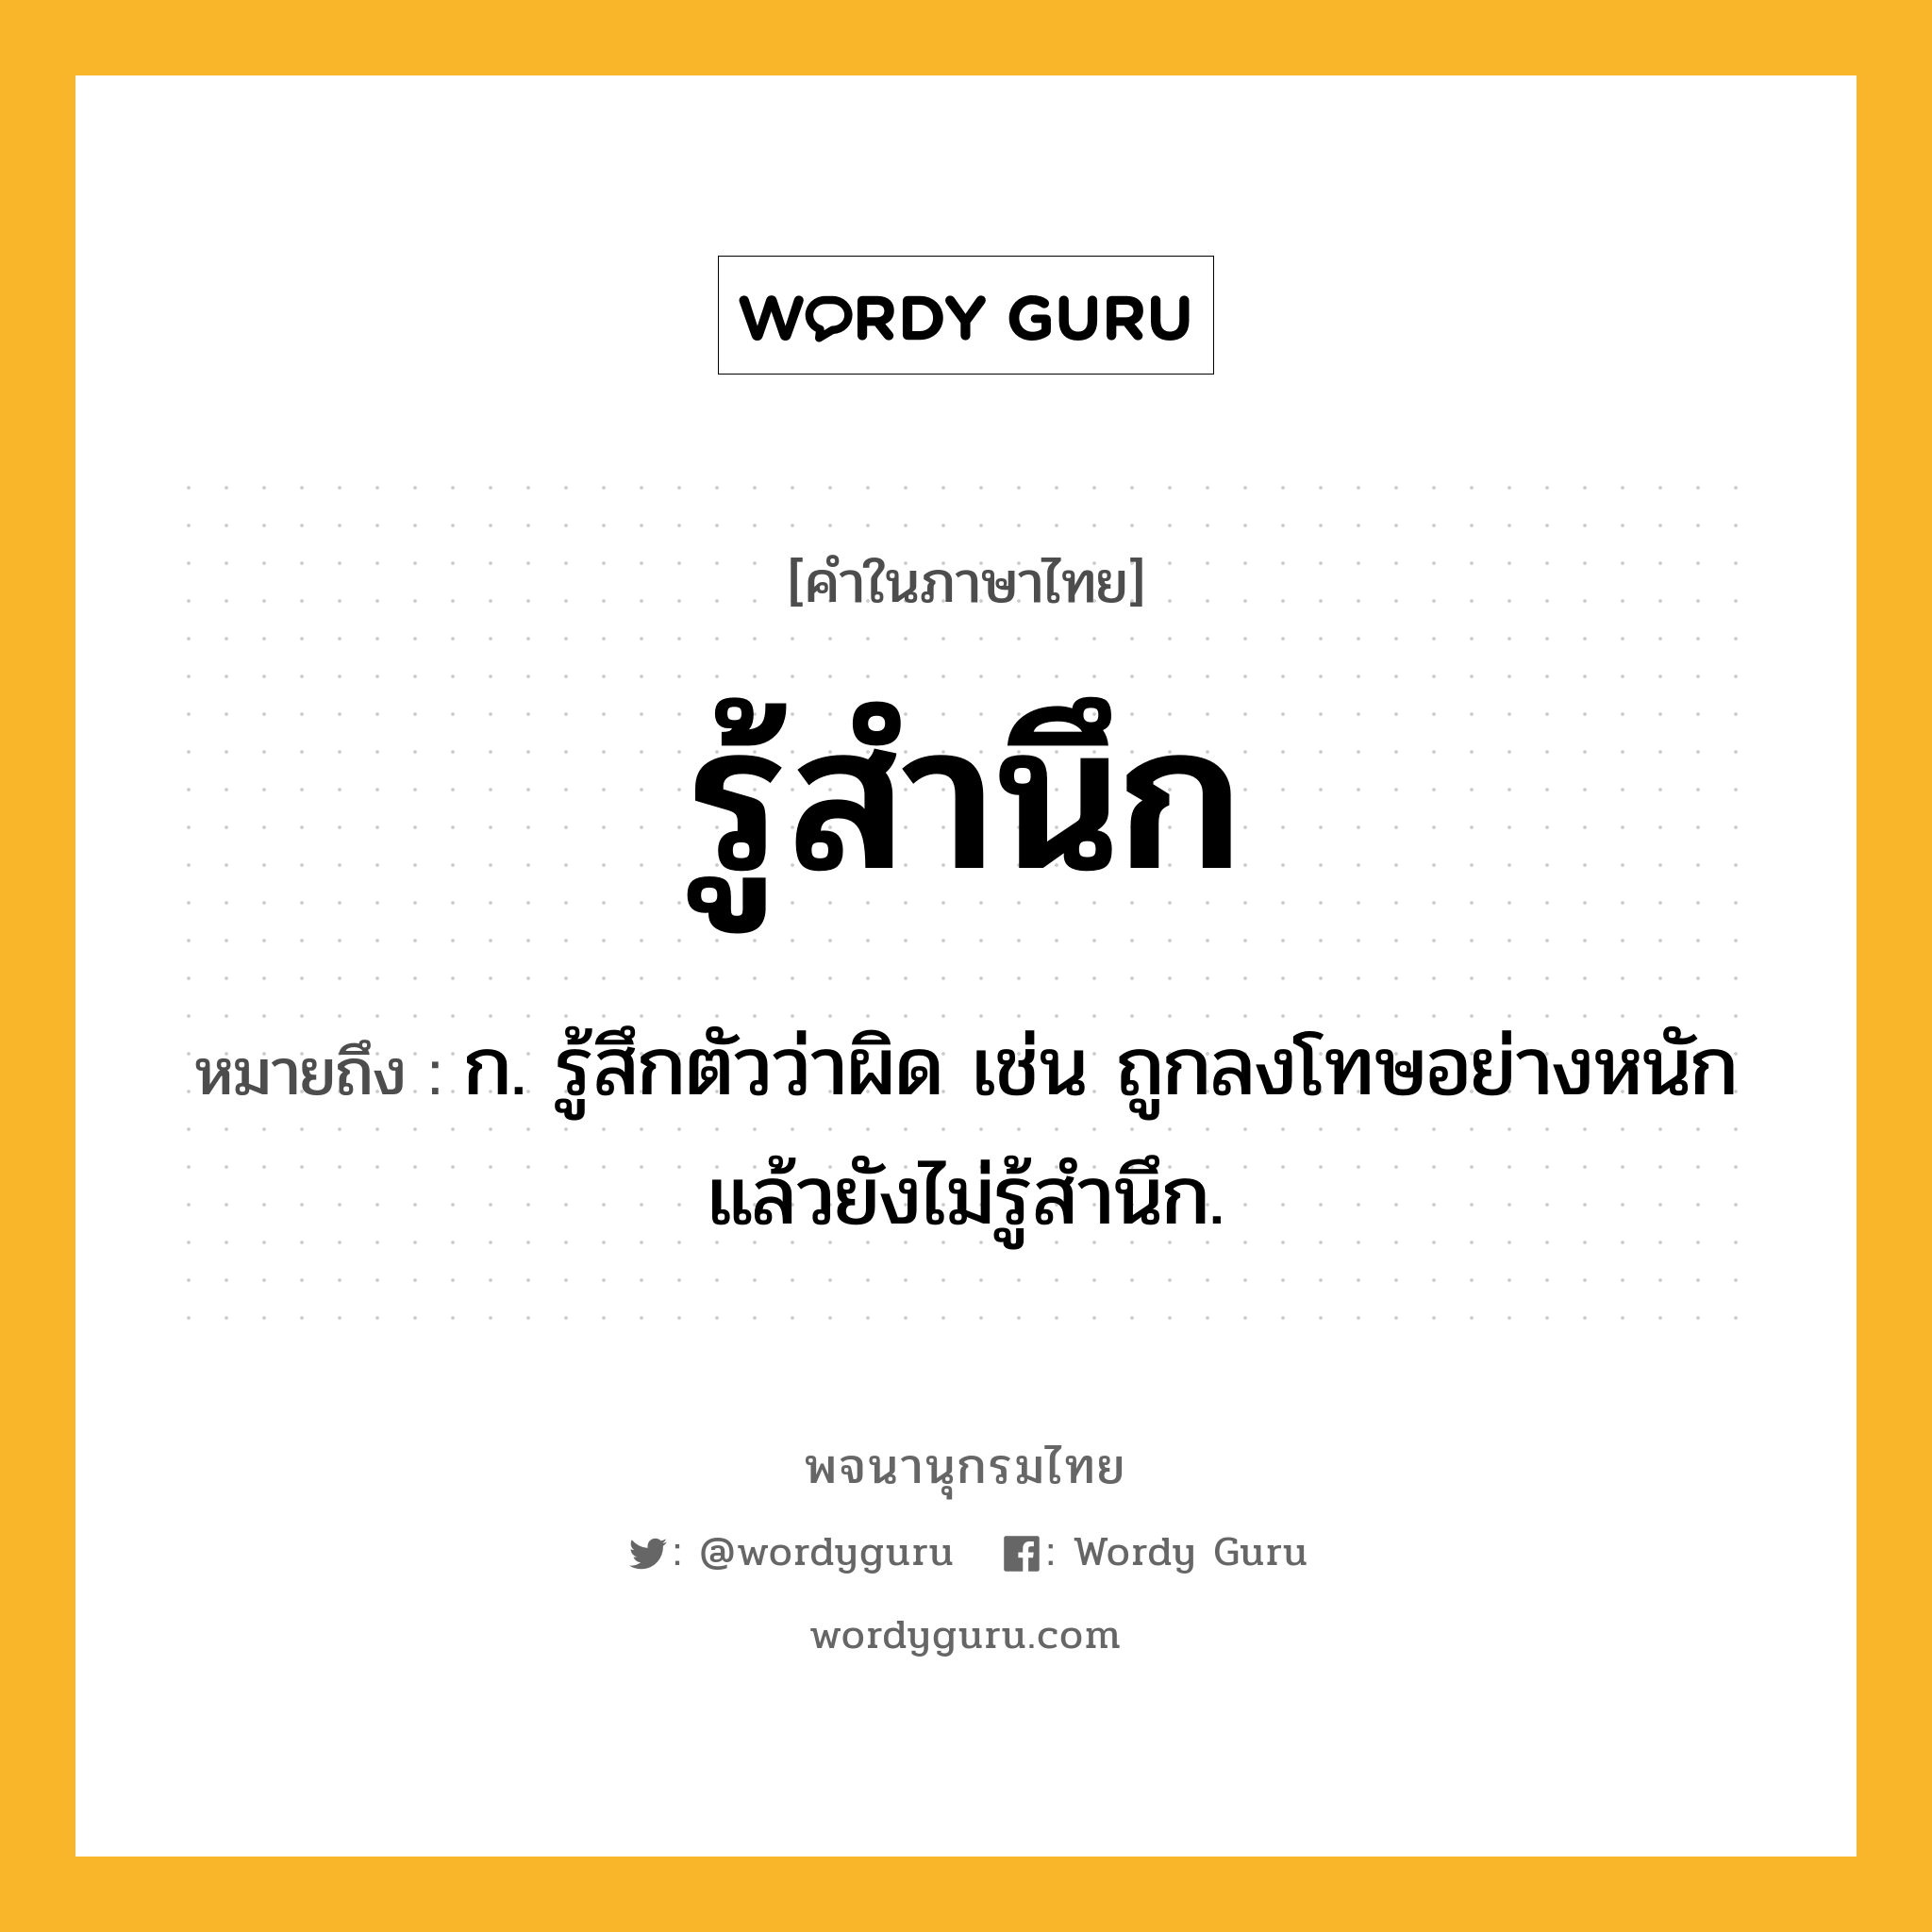 รู้สำนึก ความหมาย หมายถึงอะไร?, คำในภาษาไทย รู้สำนึก หมายถึง ก. รู้สึกตัวว่าผิด เช่น ถูกลงโทษอย่างหนักแล้วยังไม่รู้สำนึก.